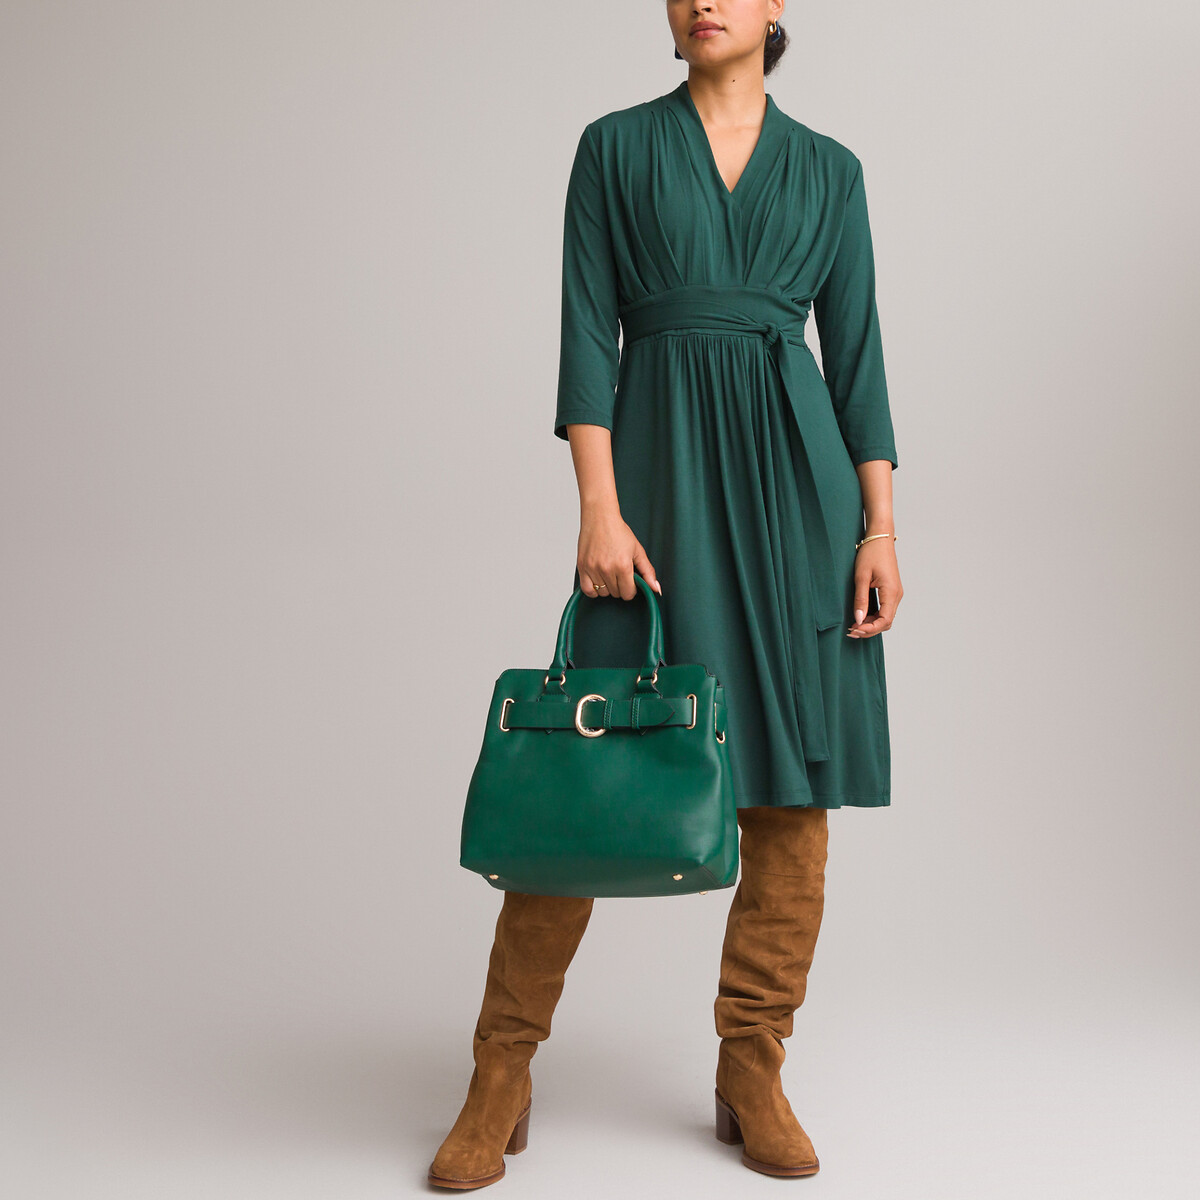 Платье ANNE WEYBURN Платье Расклешенное из струящегося трикотажа с рукавами 34 46 зеленый, размер 46 - фото 1